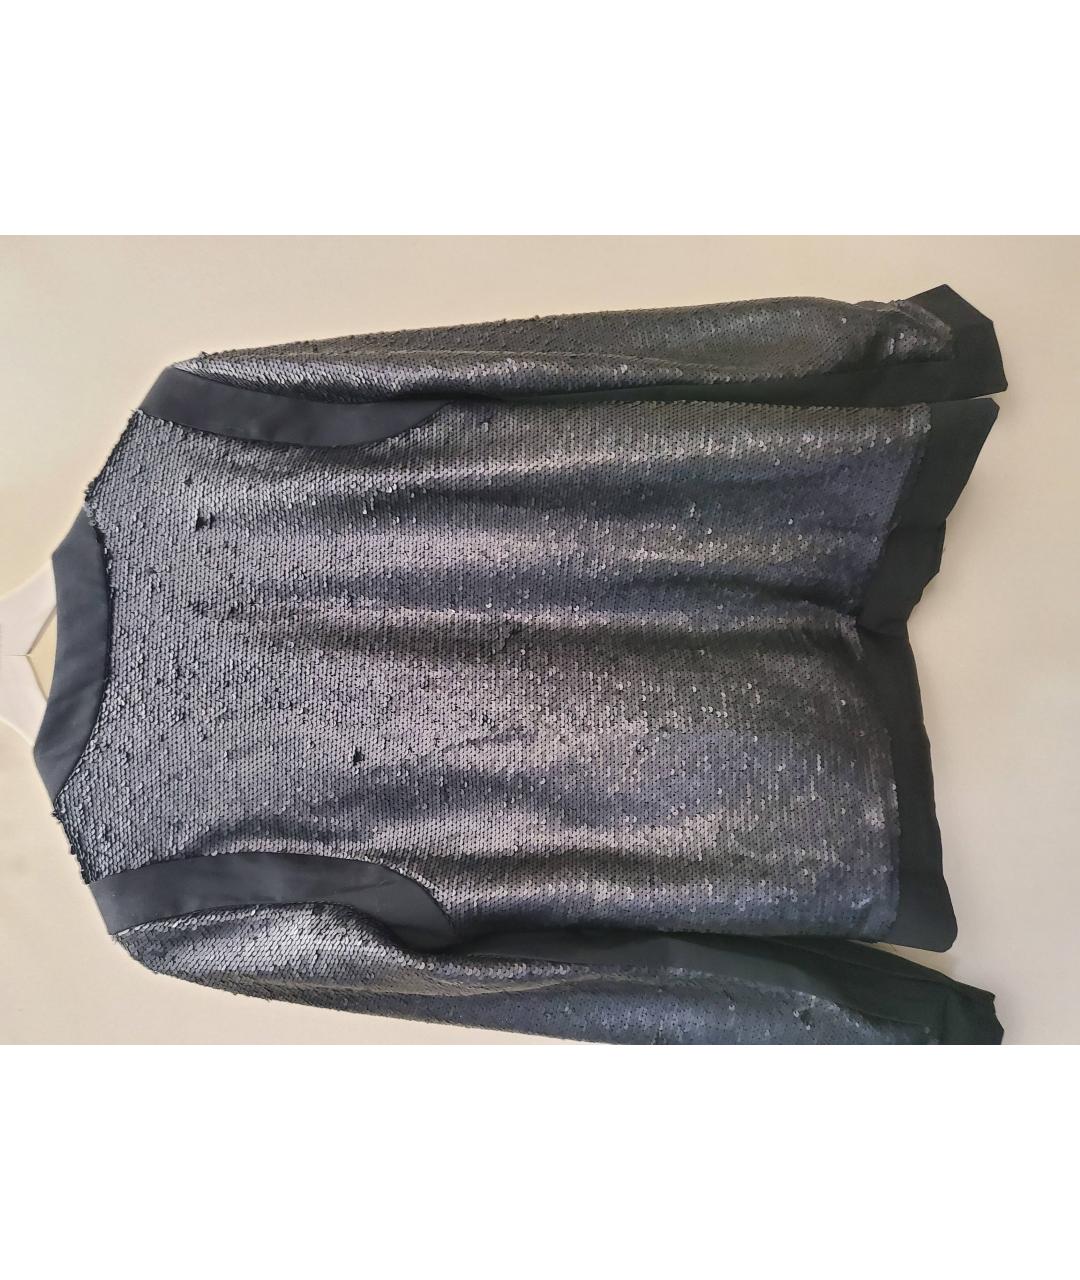 MICHAEL KORS Черный полиэстеровый жакет/пиджак, фото 2